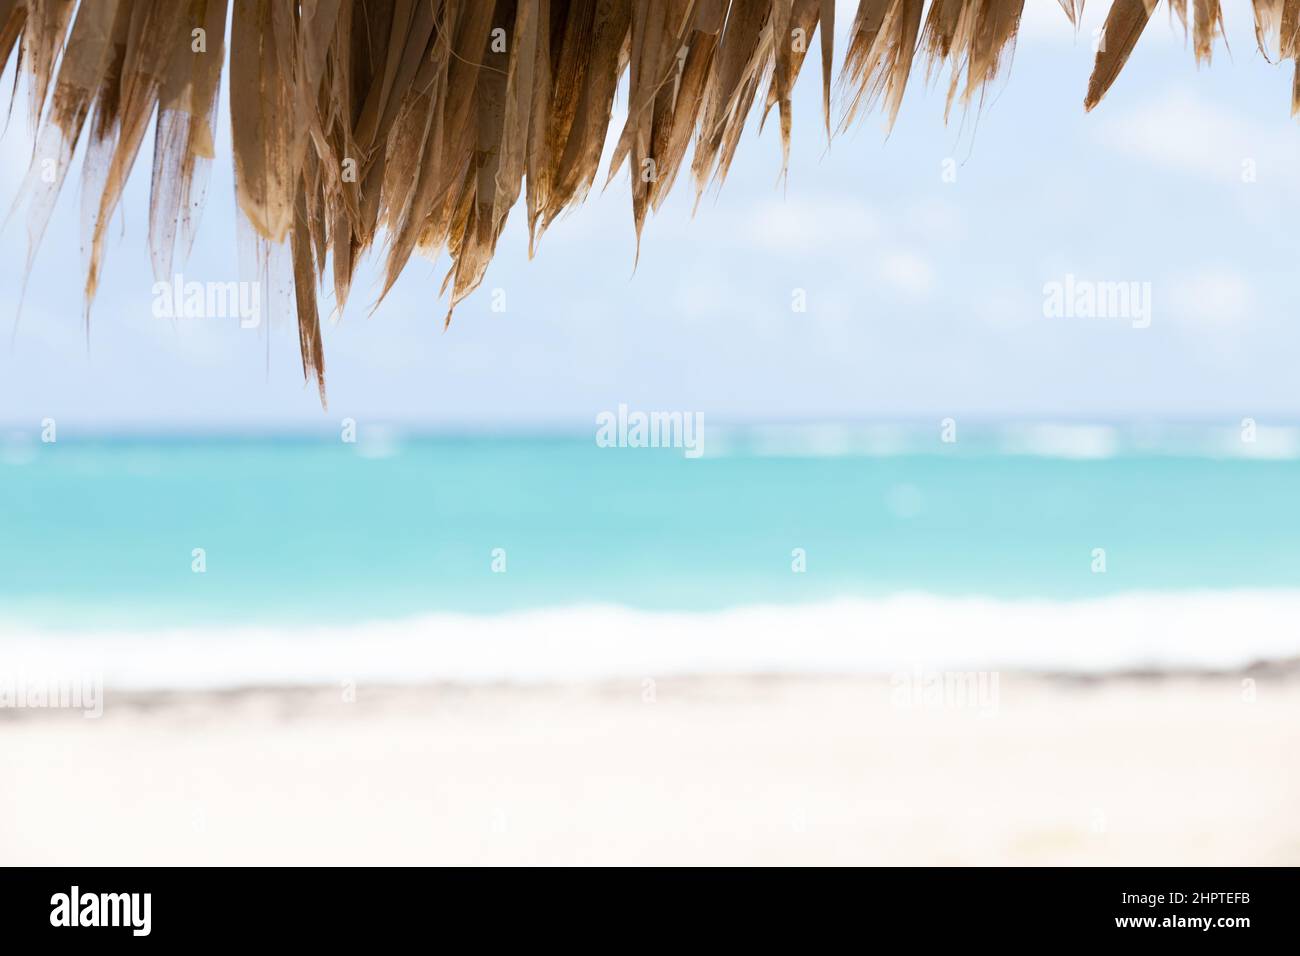 Photo de paysage côtier floue avec plage vide prise sous un parasol en bois. Plage de Bavaro, République Dominicaine Banque D'Images